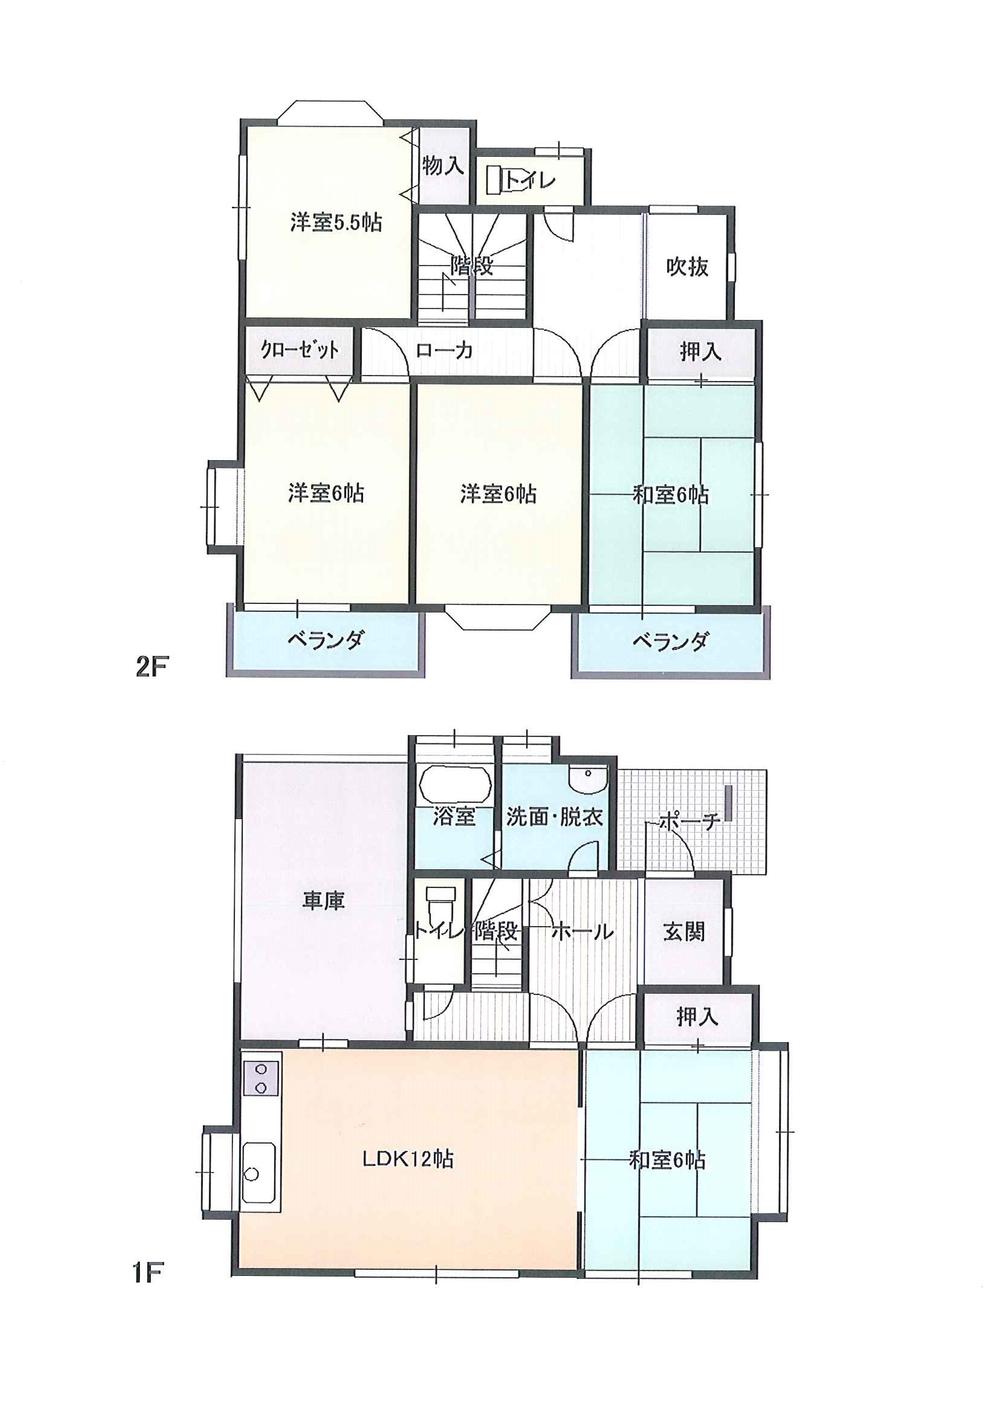 Floor plan. 8.8 million yen, 5LDK, Land area 168.74 sq m , Building area 102.87 sq m